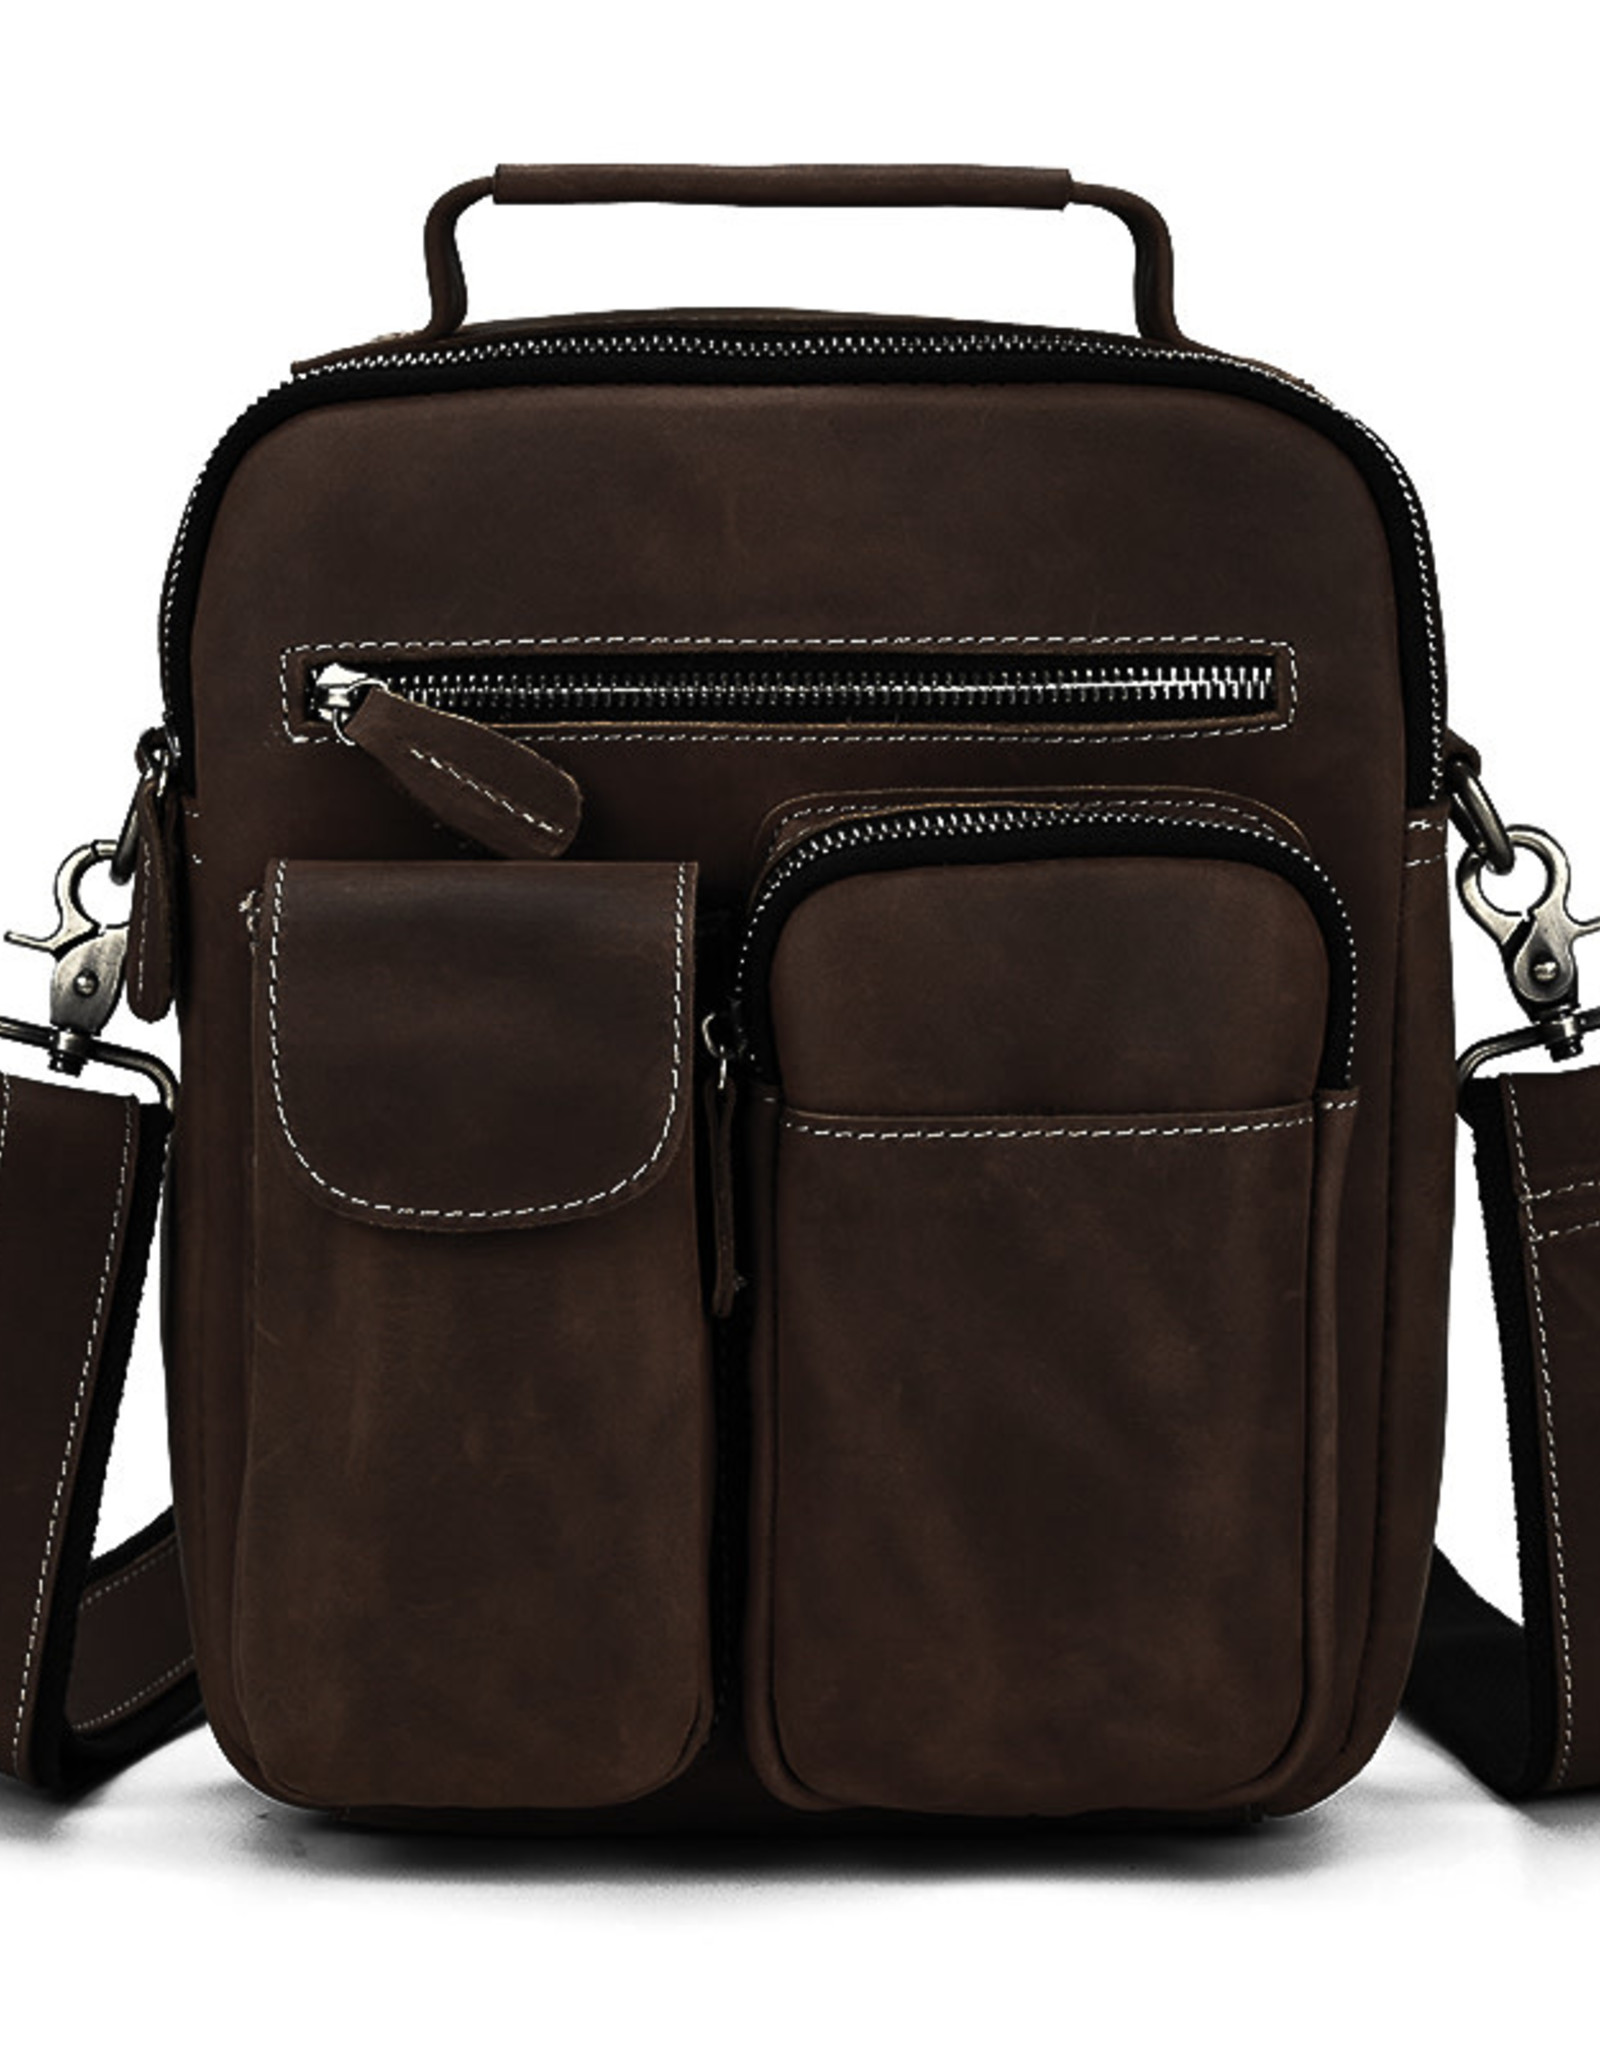 Crossbody / Messenger Bag Strap - Choose Leather Color - 50 Length, 1.5  Wide, #14 Teardrop Hooks